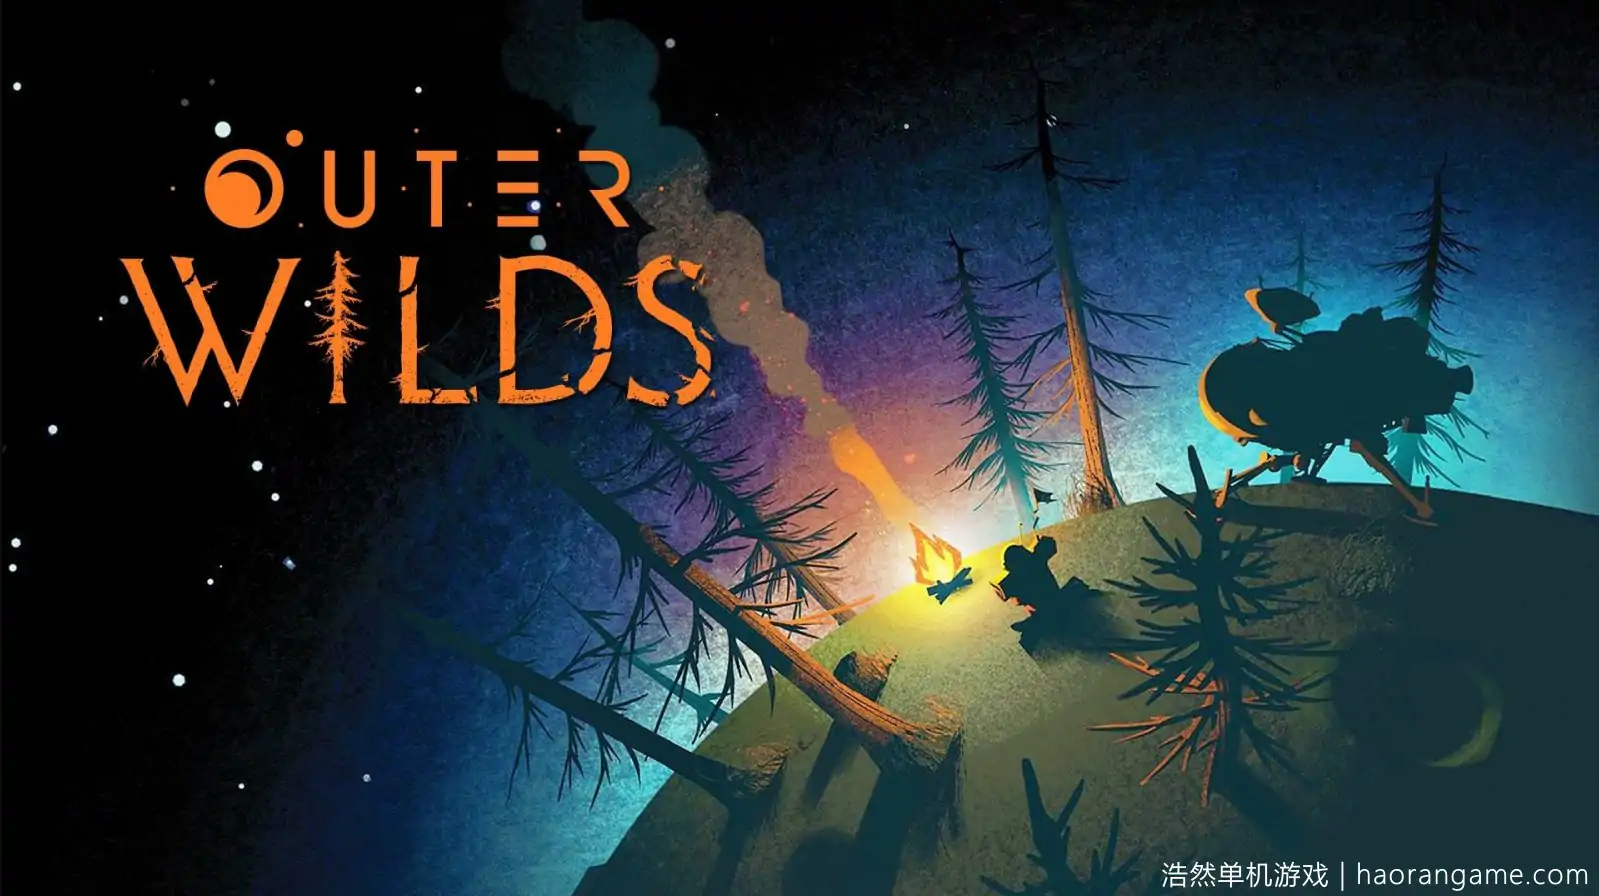 星际拓荒 Outer Wilds-浩然单机游戏 | haorangame.com